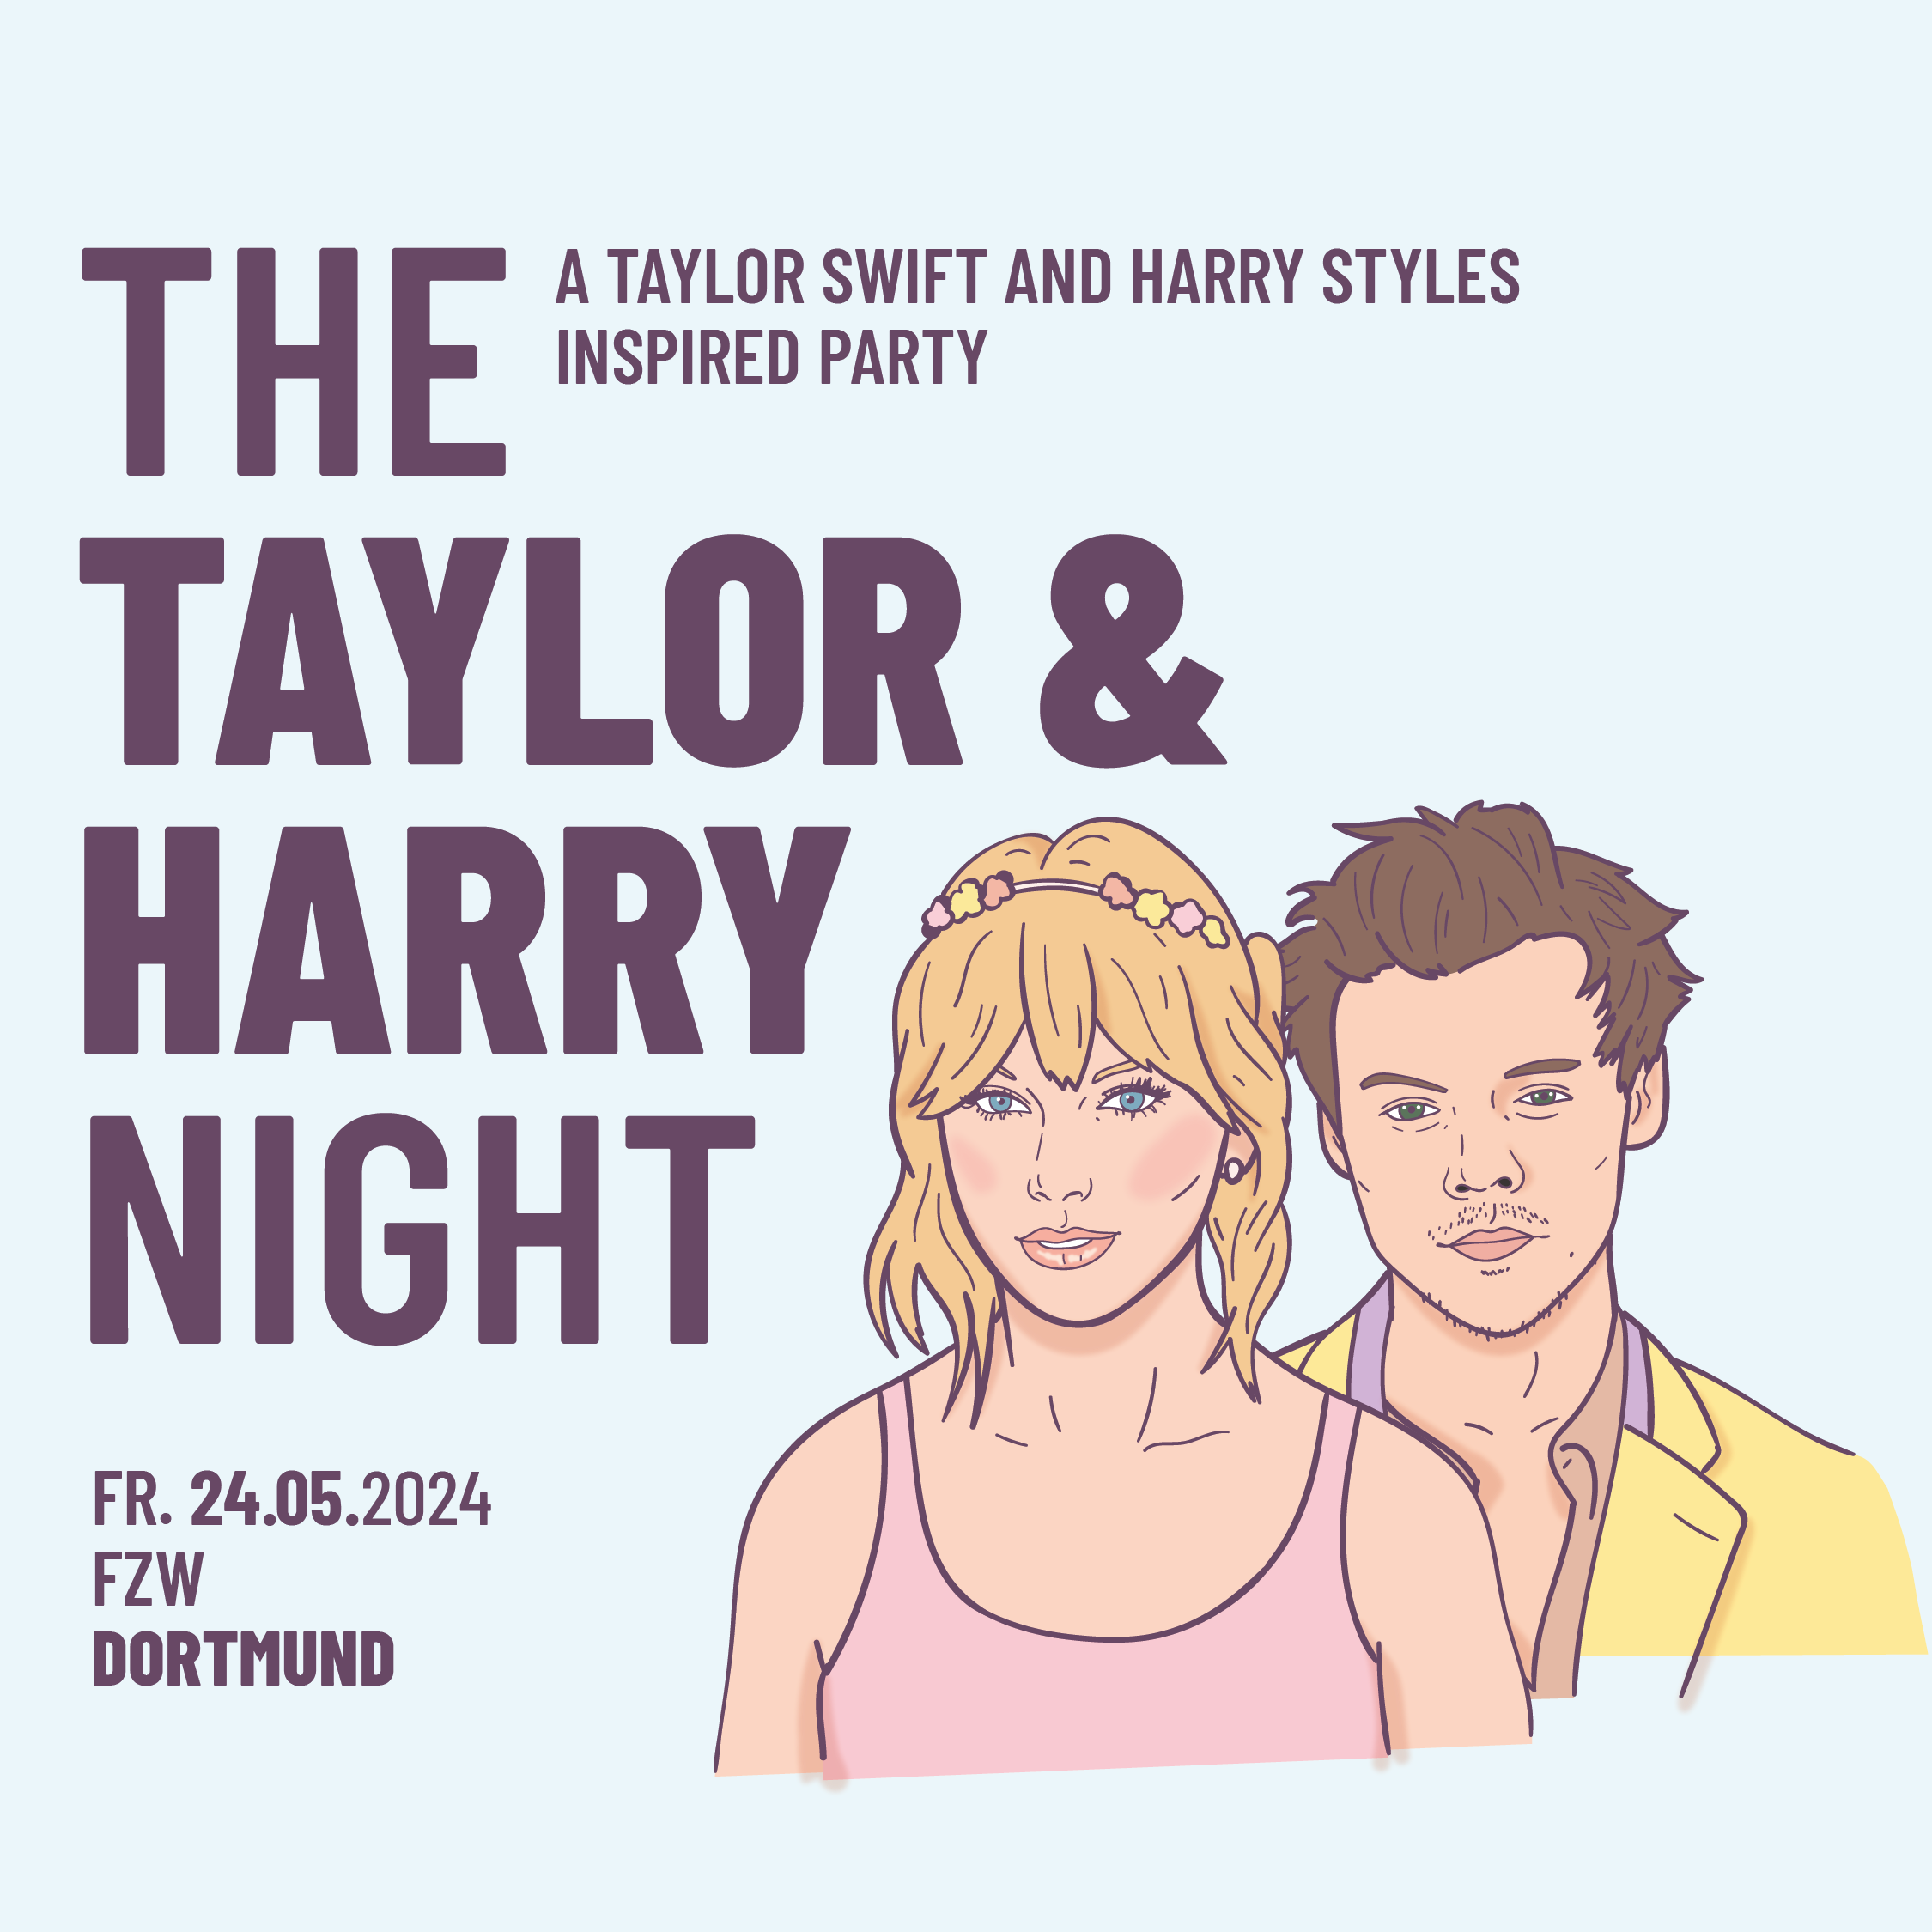 The Taylor & Harry Night am 24.05.2024 im FZW in Dortmund.